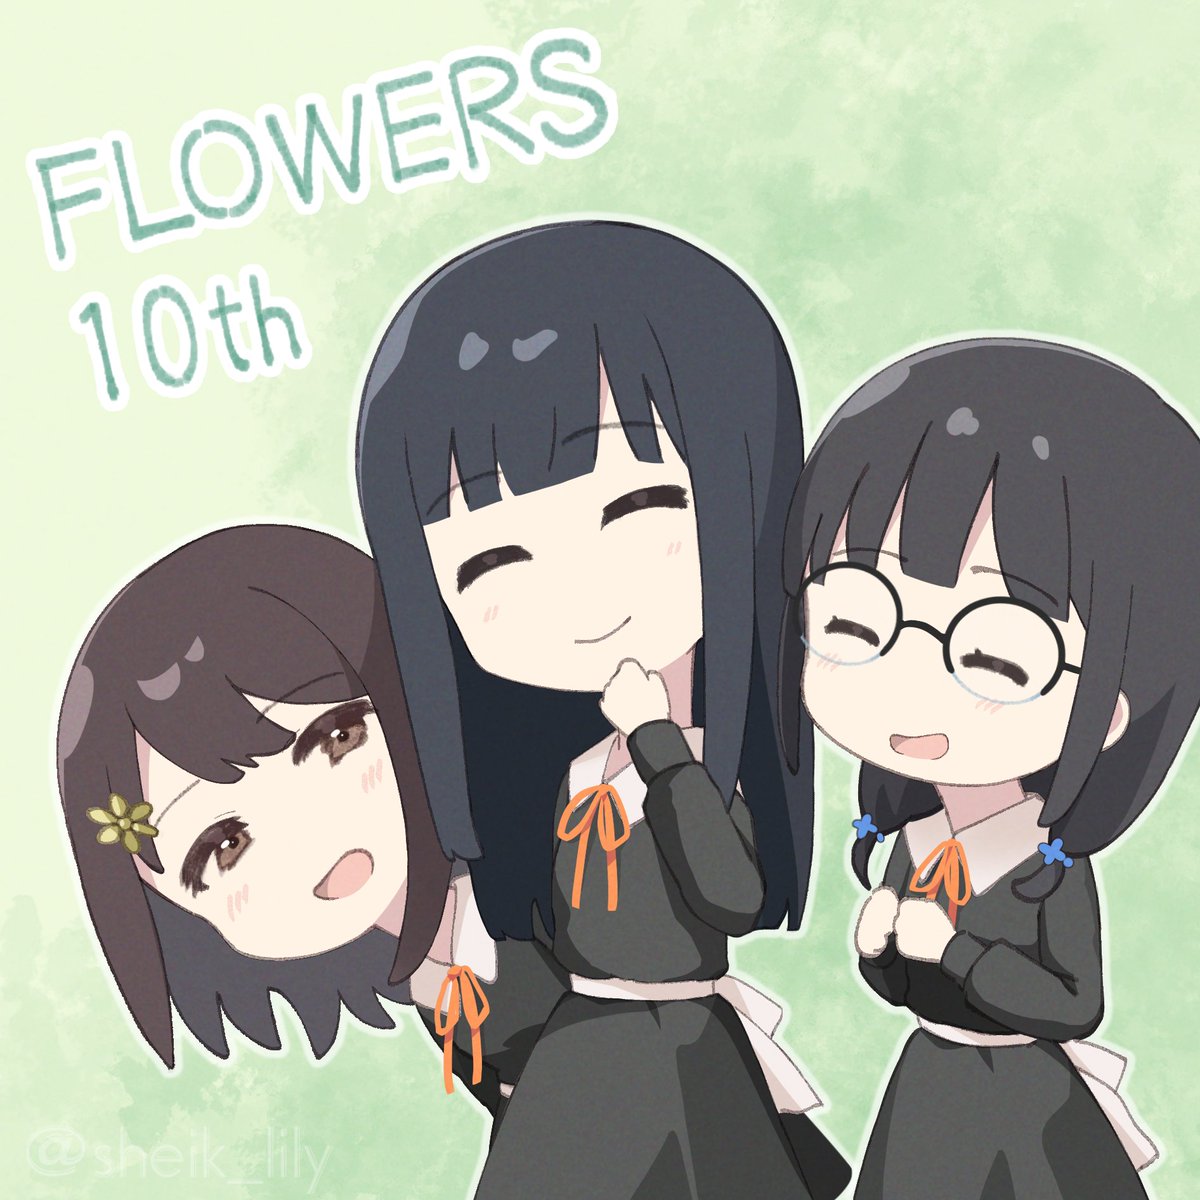 「FLOWERS 10周年おめでとうございます～～～!!!✾✾✾✾✾✾✾✾✾✾#ゆ」|椎九 水魚 ✾のイラスト